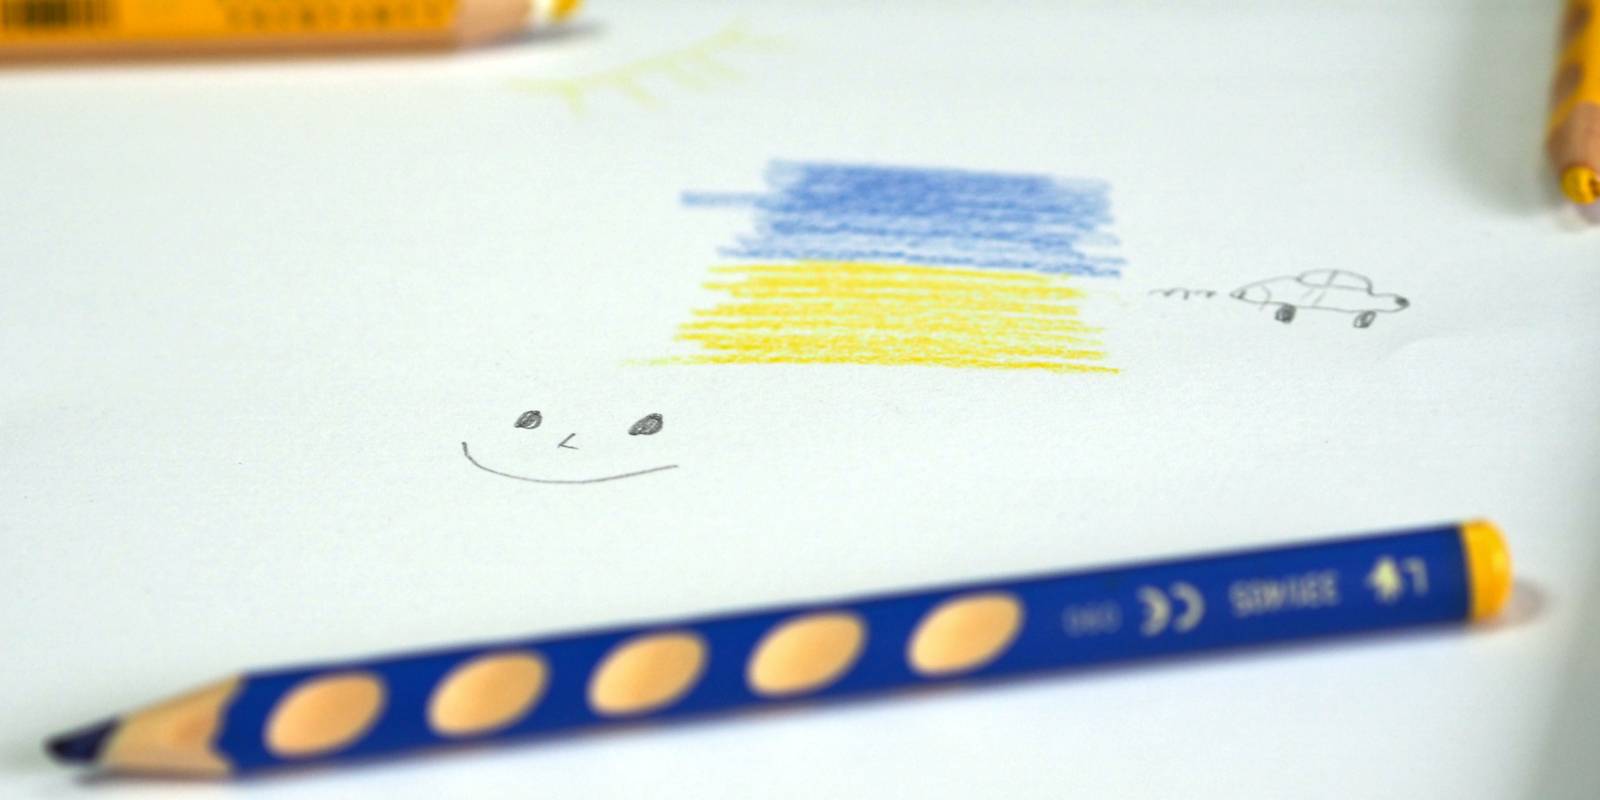 Einfache Zeichnung mit Buntstiften auf einem weißen Blatt Papier: Die Farben Blau und Gelb, eine Sonne, ein grinsendes Gesicht und ein Auto. Auf dem Blatt verteilt liegen Buntstifte.